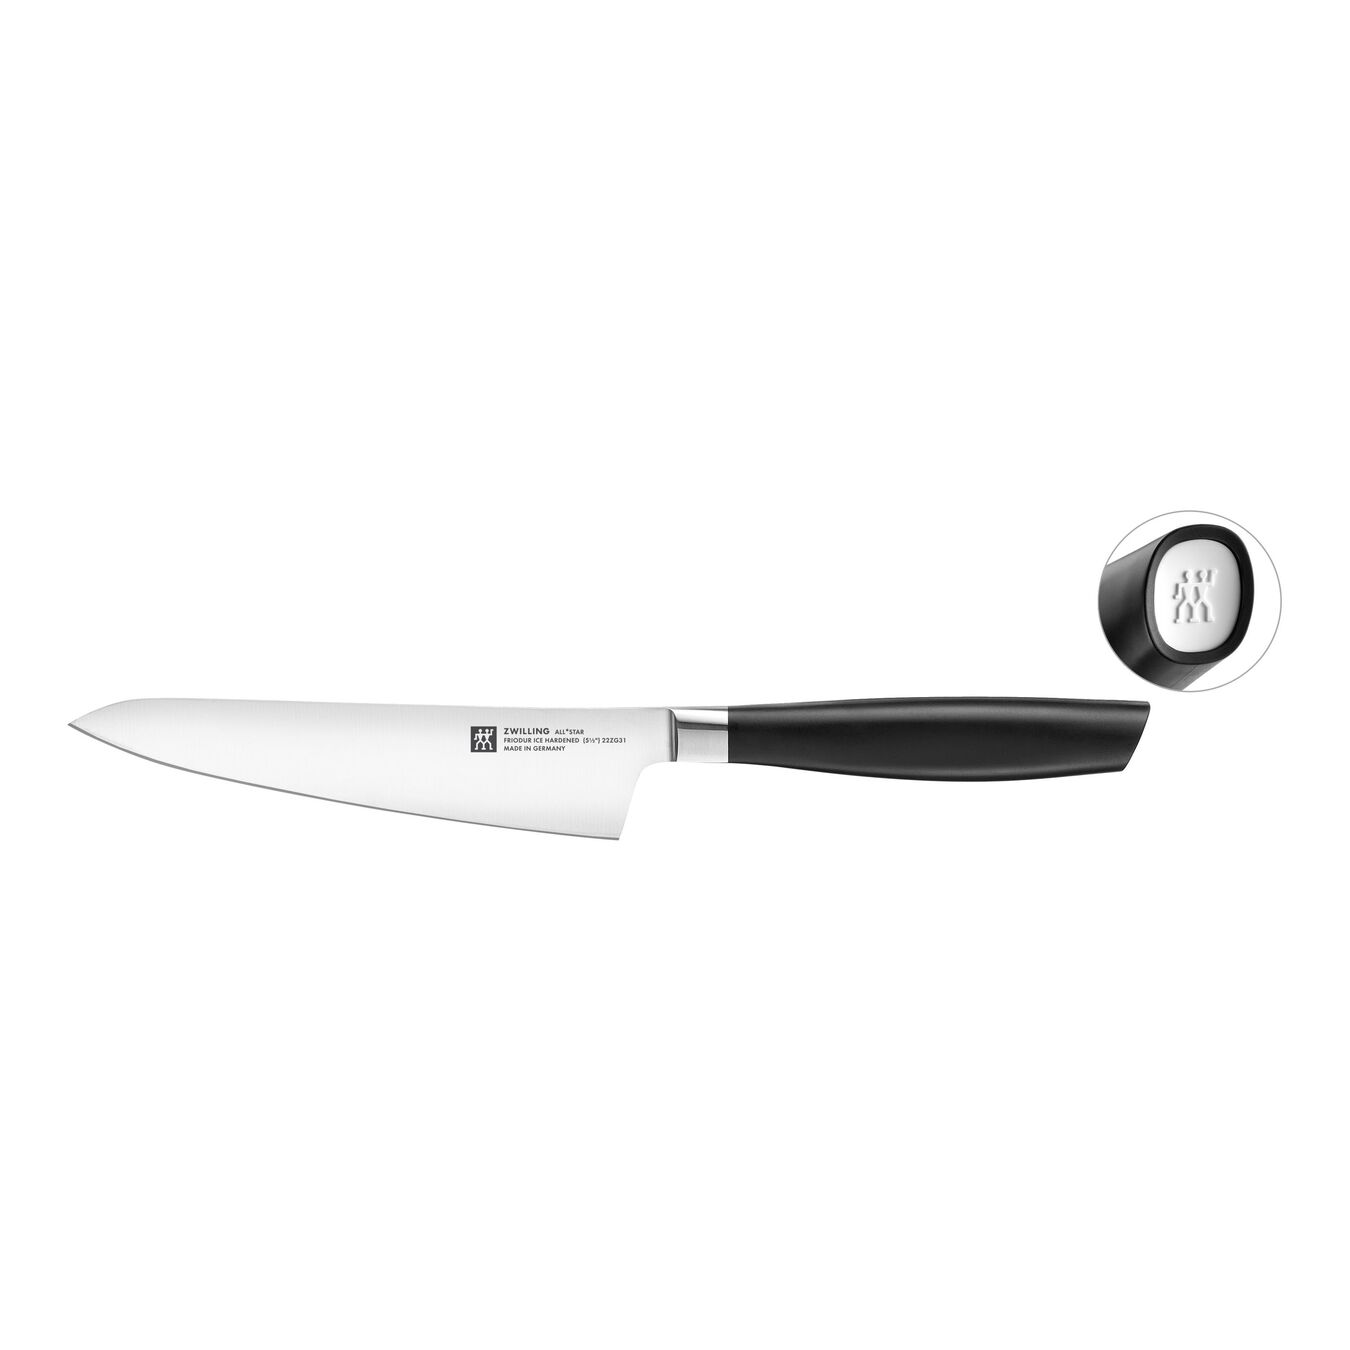 Kompakt kokkekniv 14 cm, Hvid,,large 1